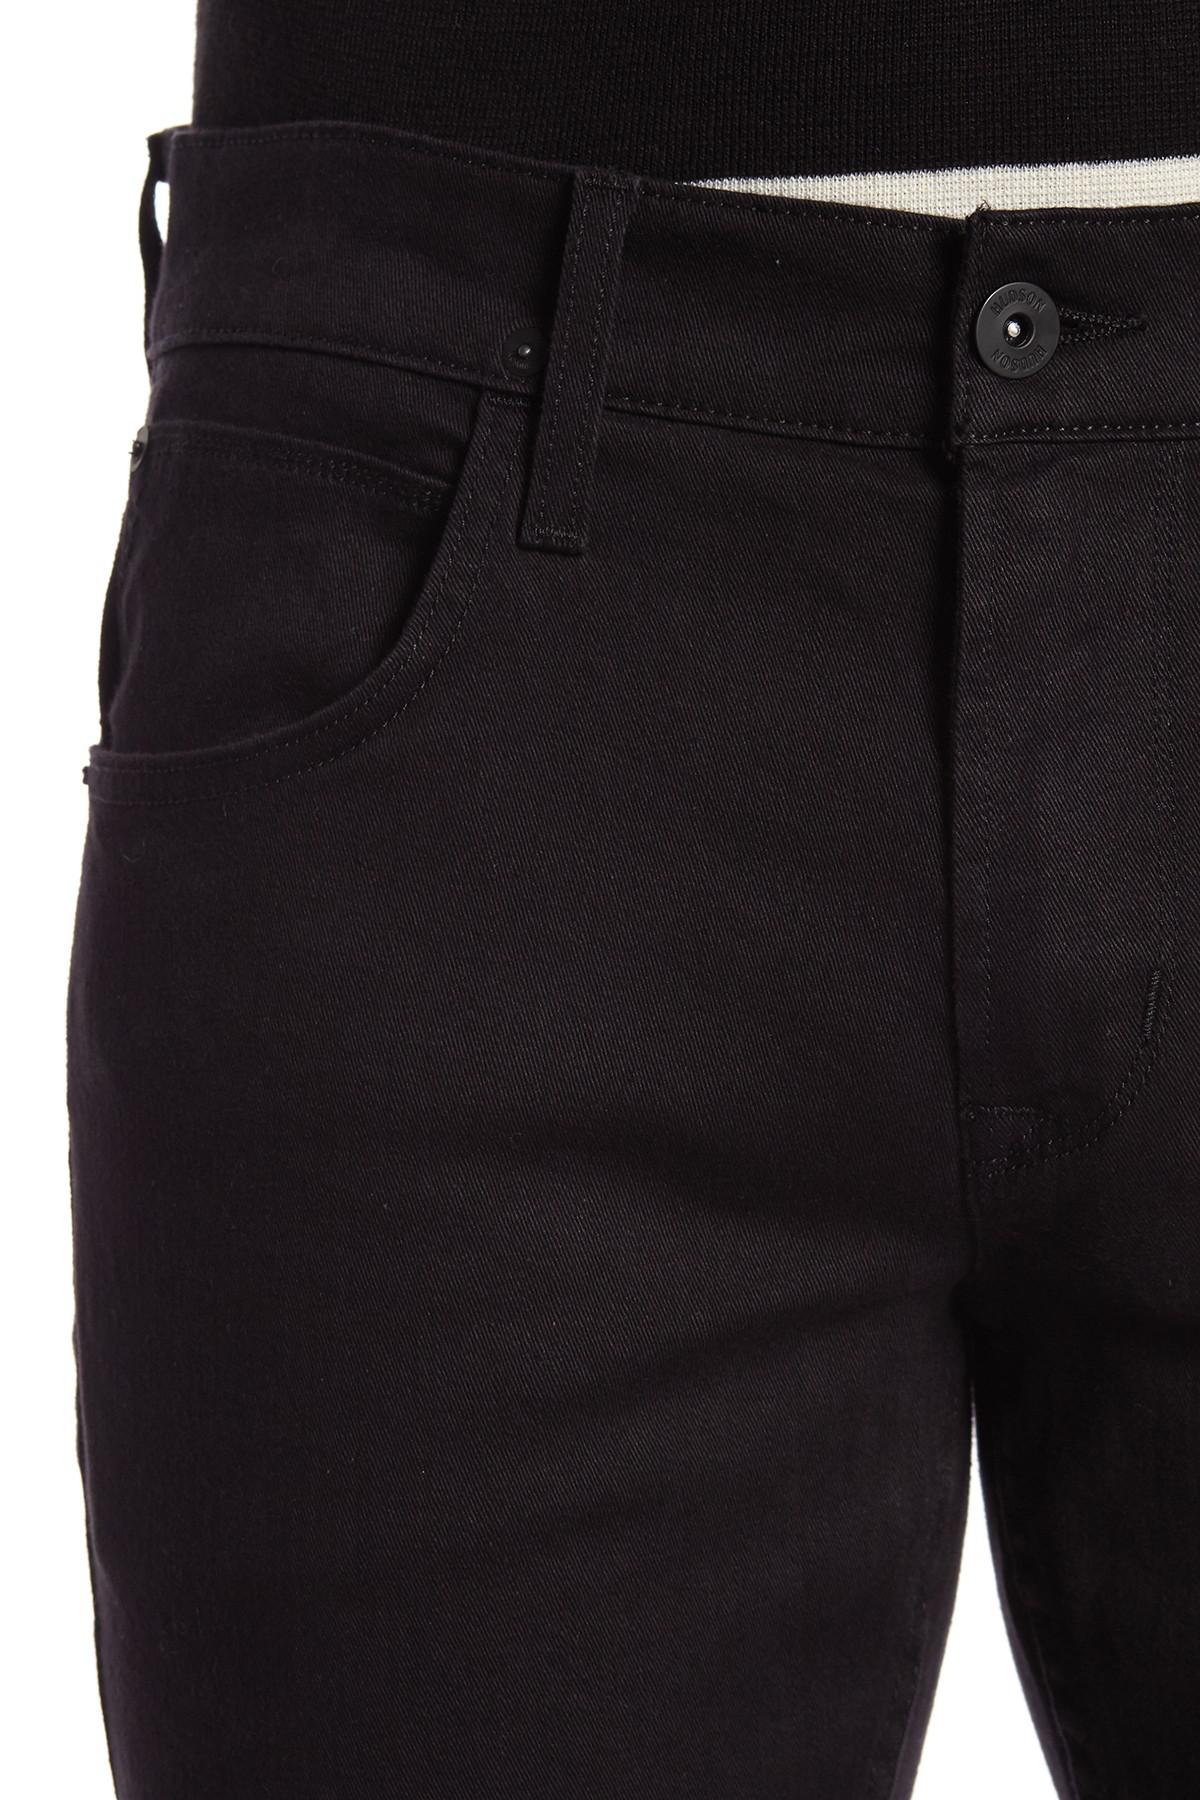 Hudson Jeans Denim Blake Slim Straight Jeans in Black for Men - Lyst